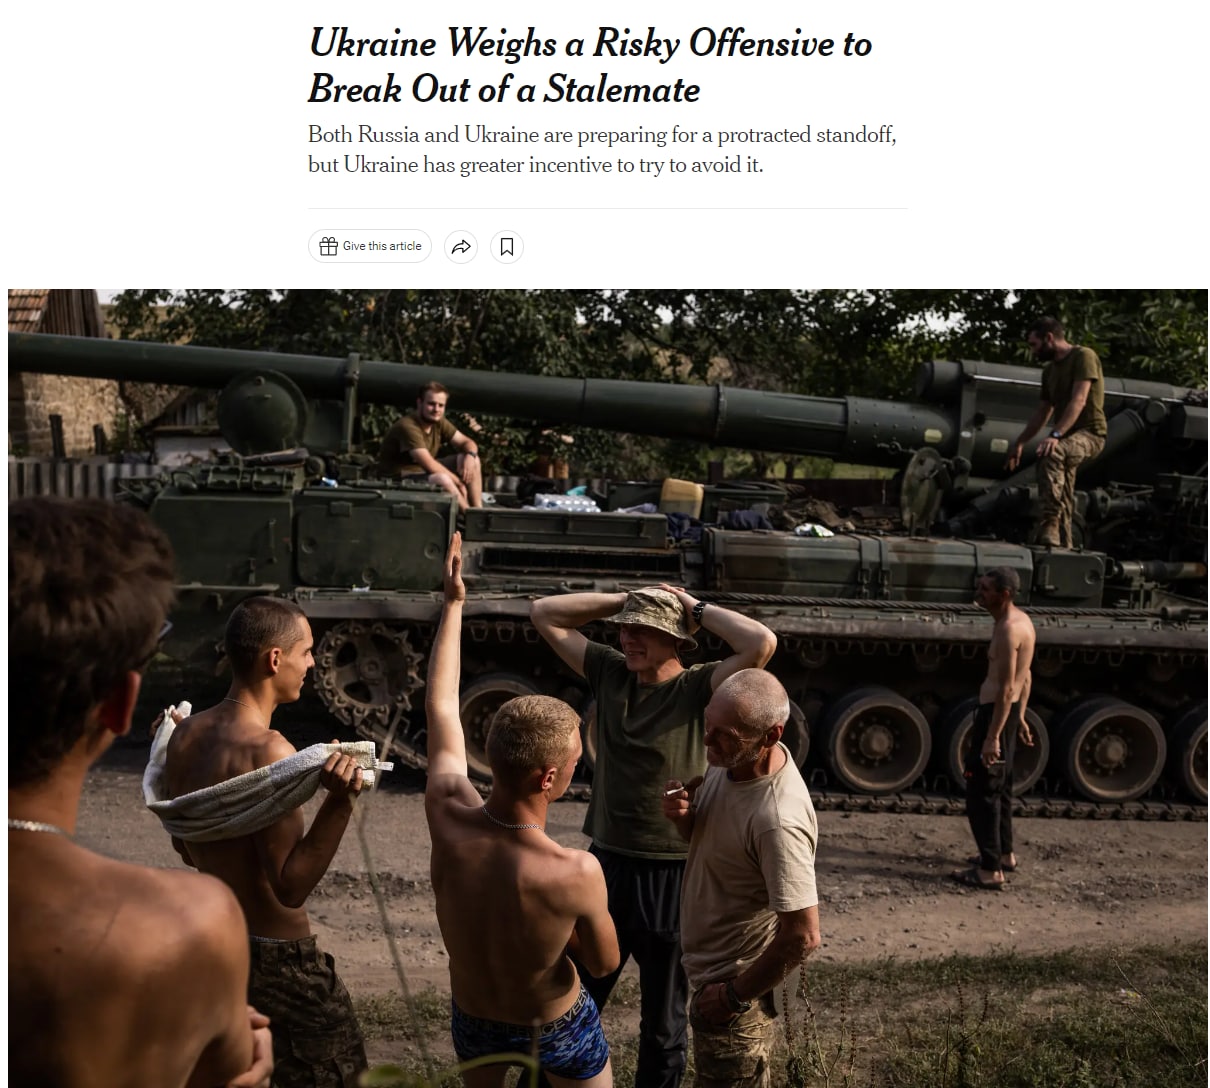 Наступление, которым Украина может попытаться выйти из военного тупика, может оказаться рискованным, пишет газета The New York Times